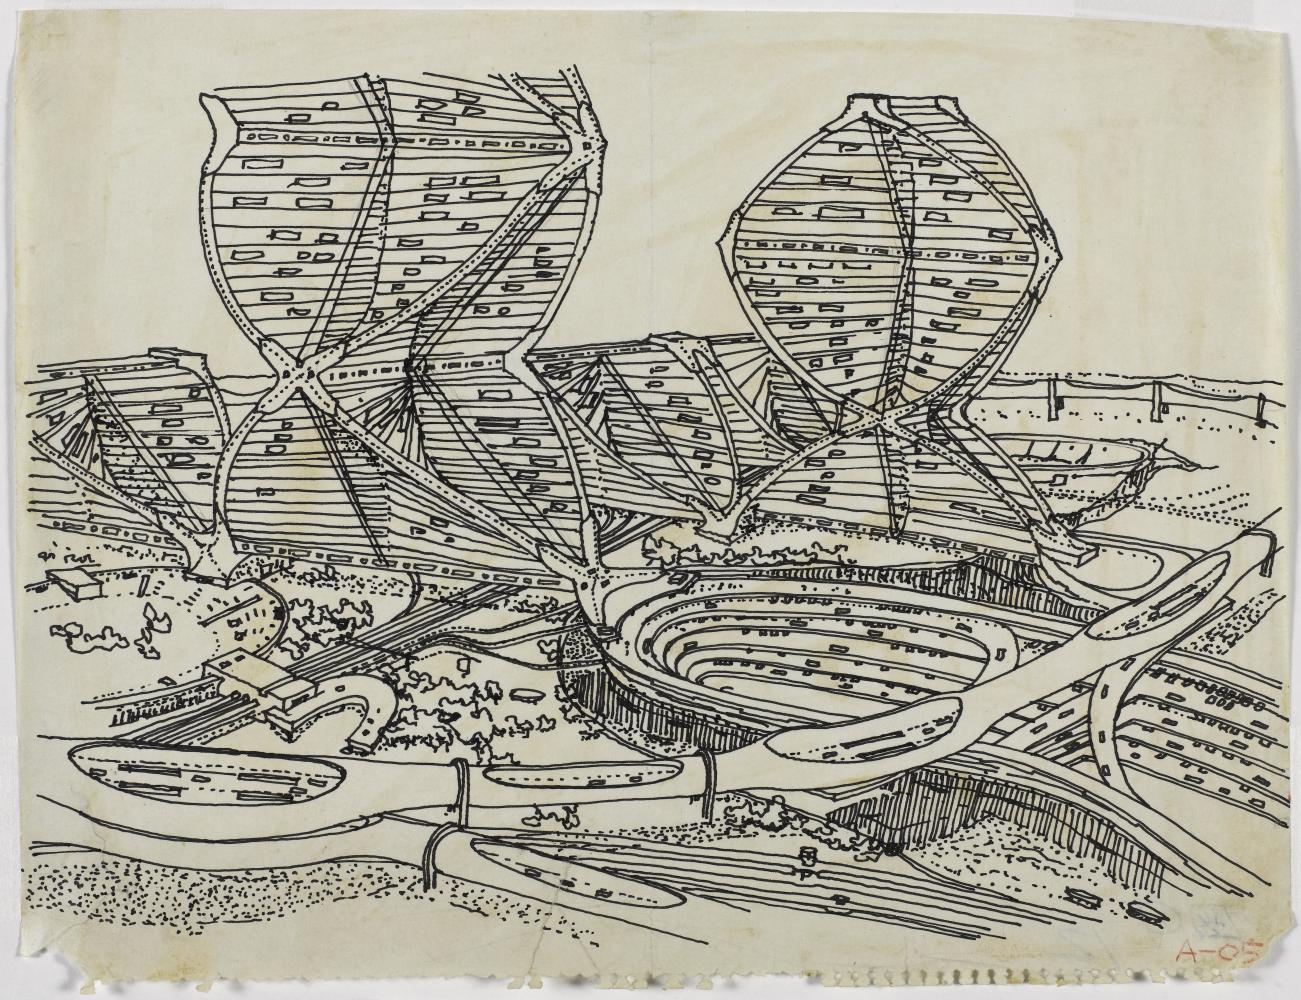 Kisho Kurokawa "Helix city", 1961 / "Perspective", 1961